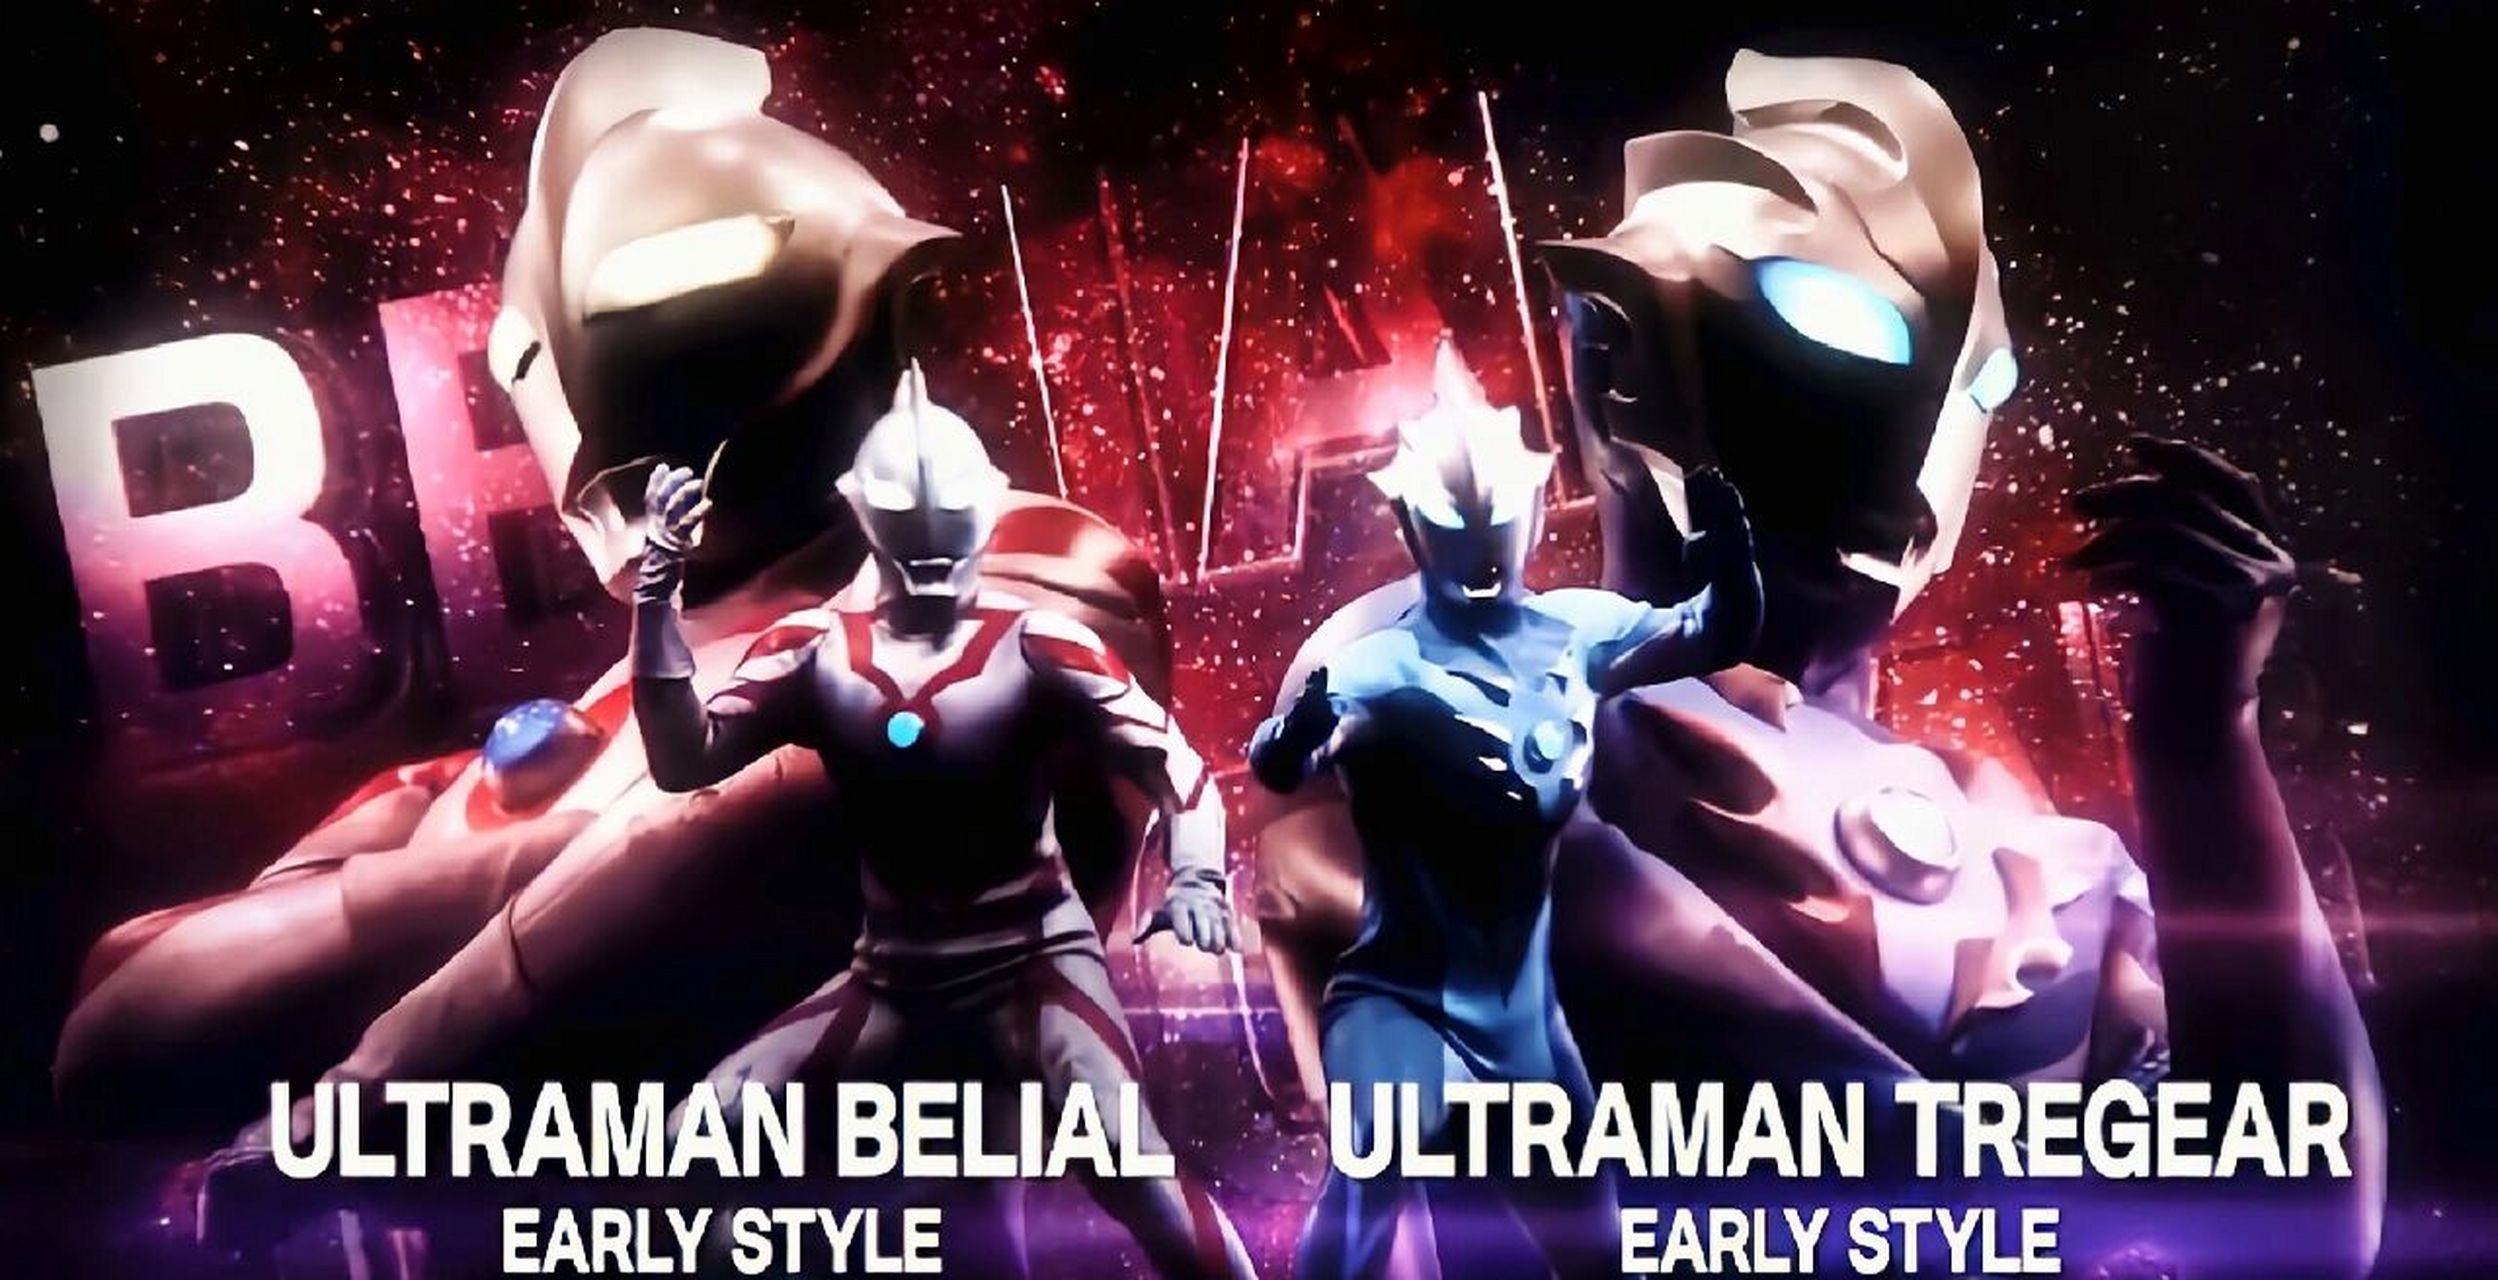 UltramanTregear图片